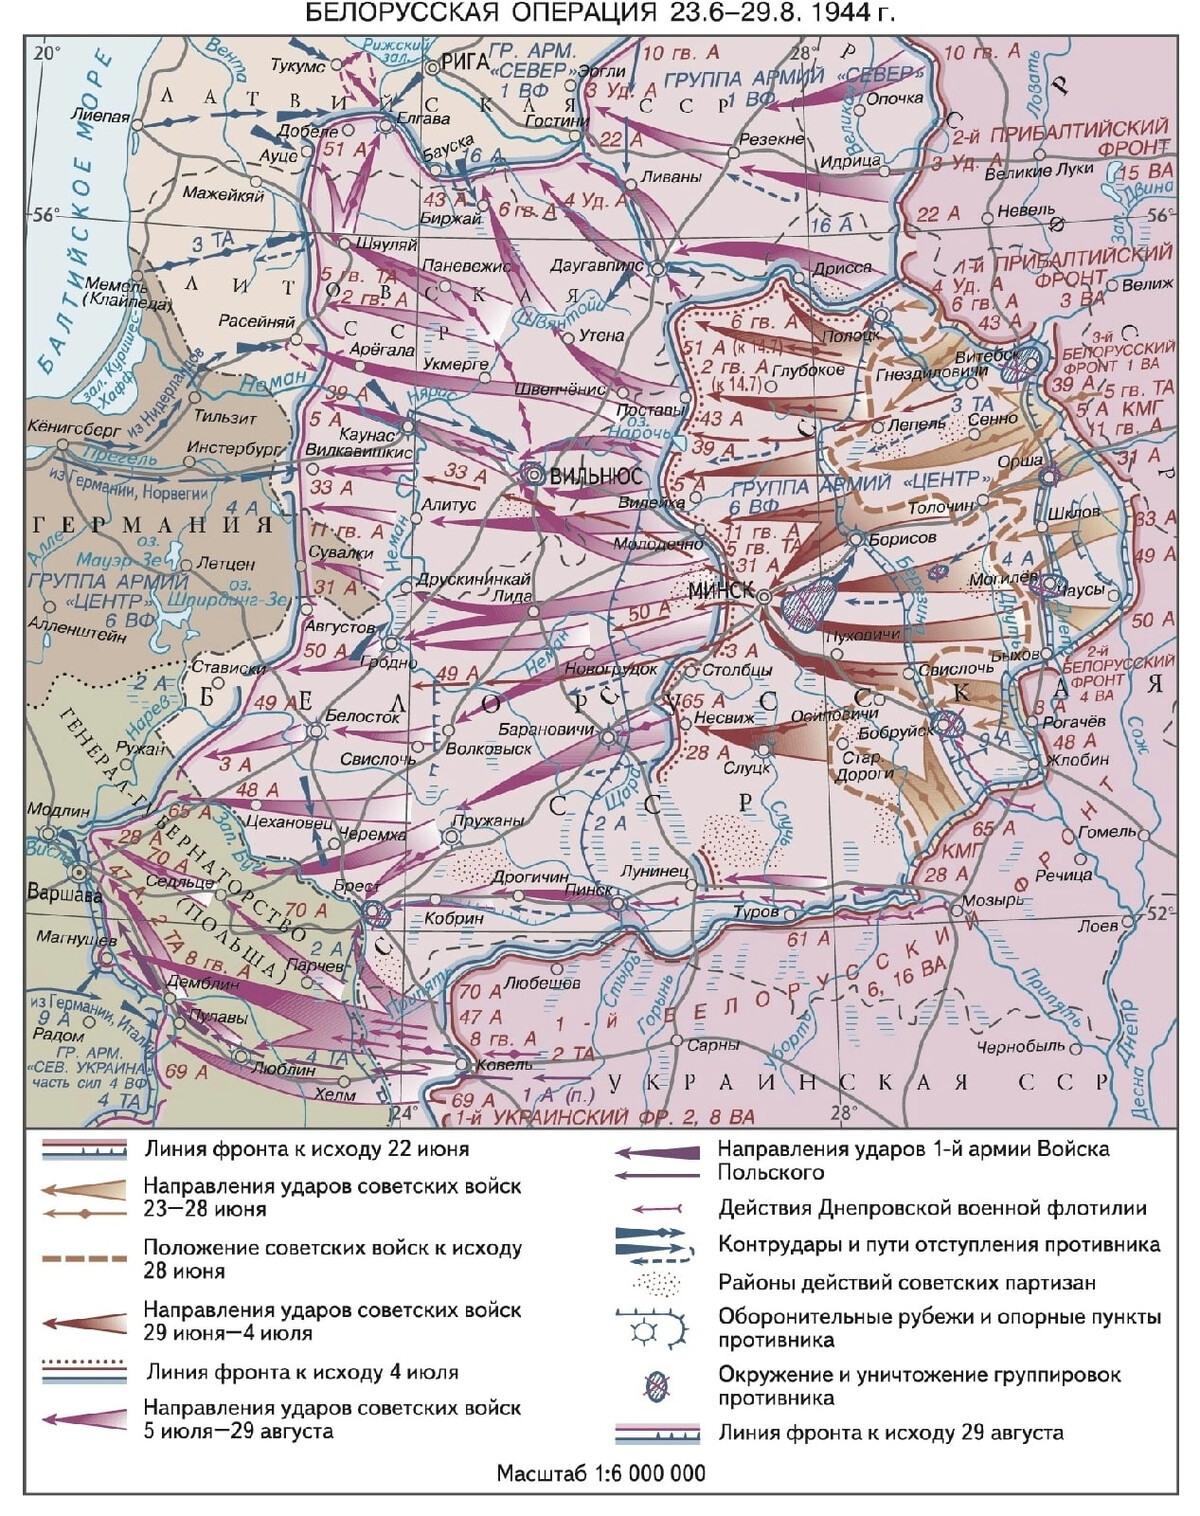 1 белорусский фронт карта